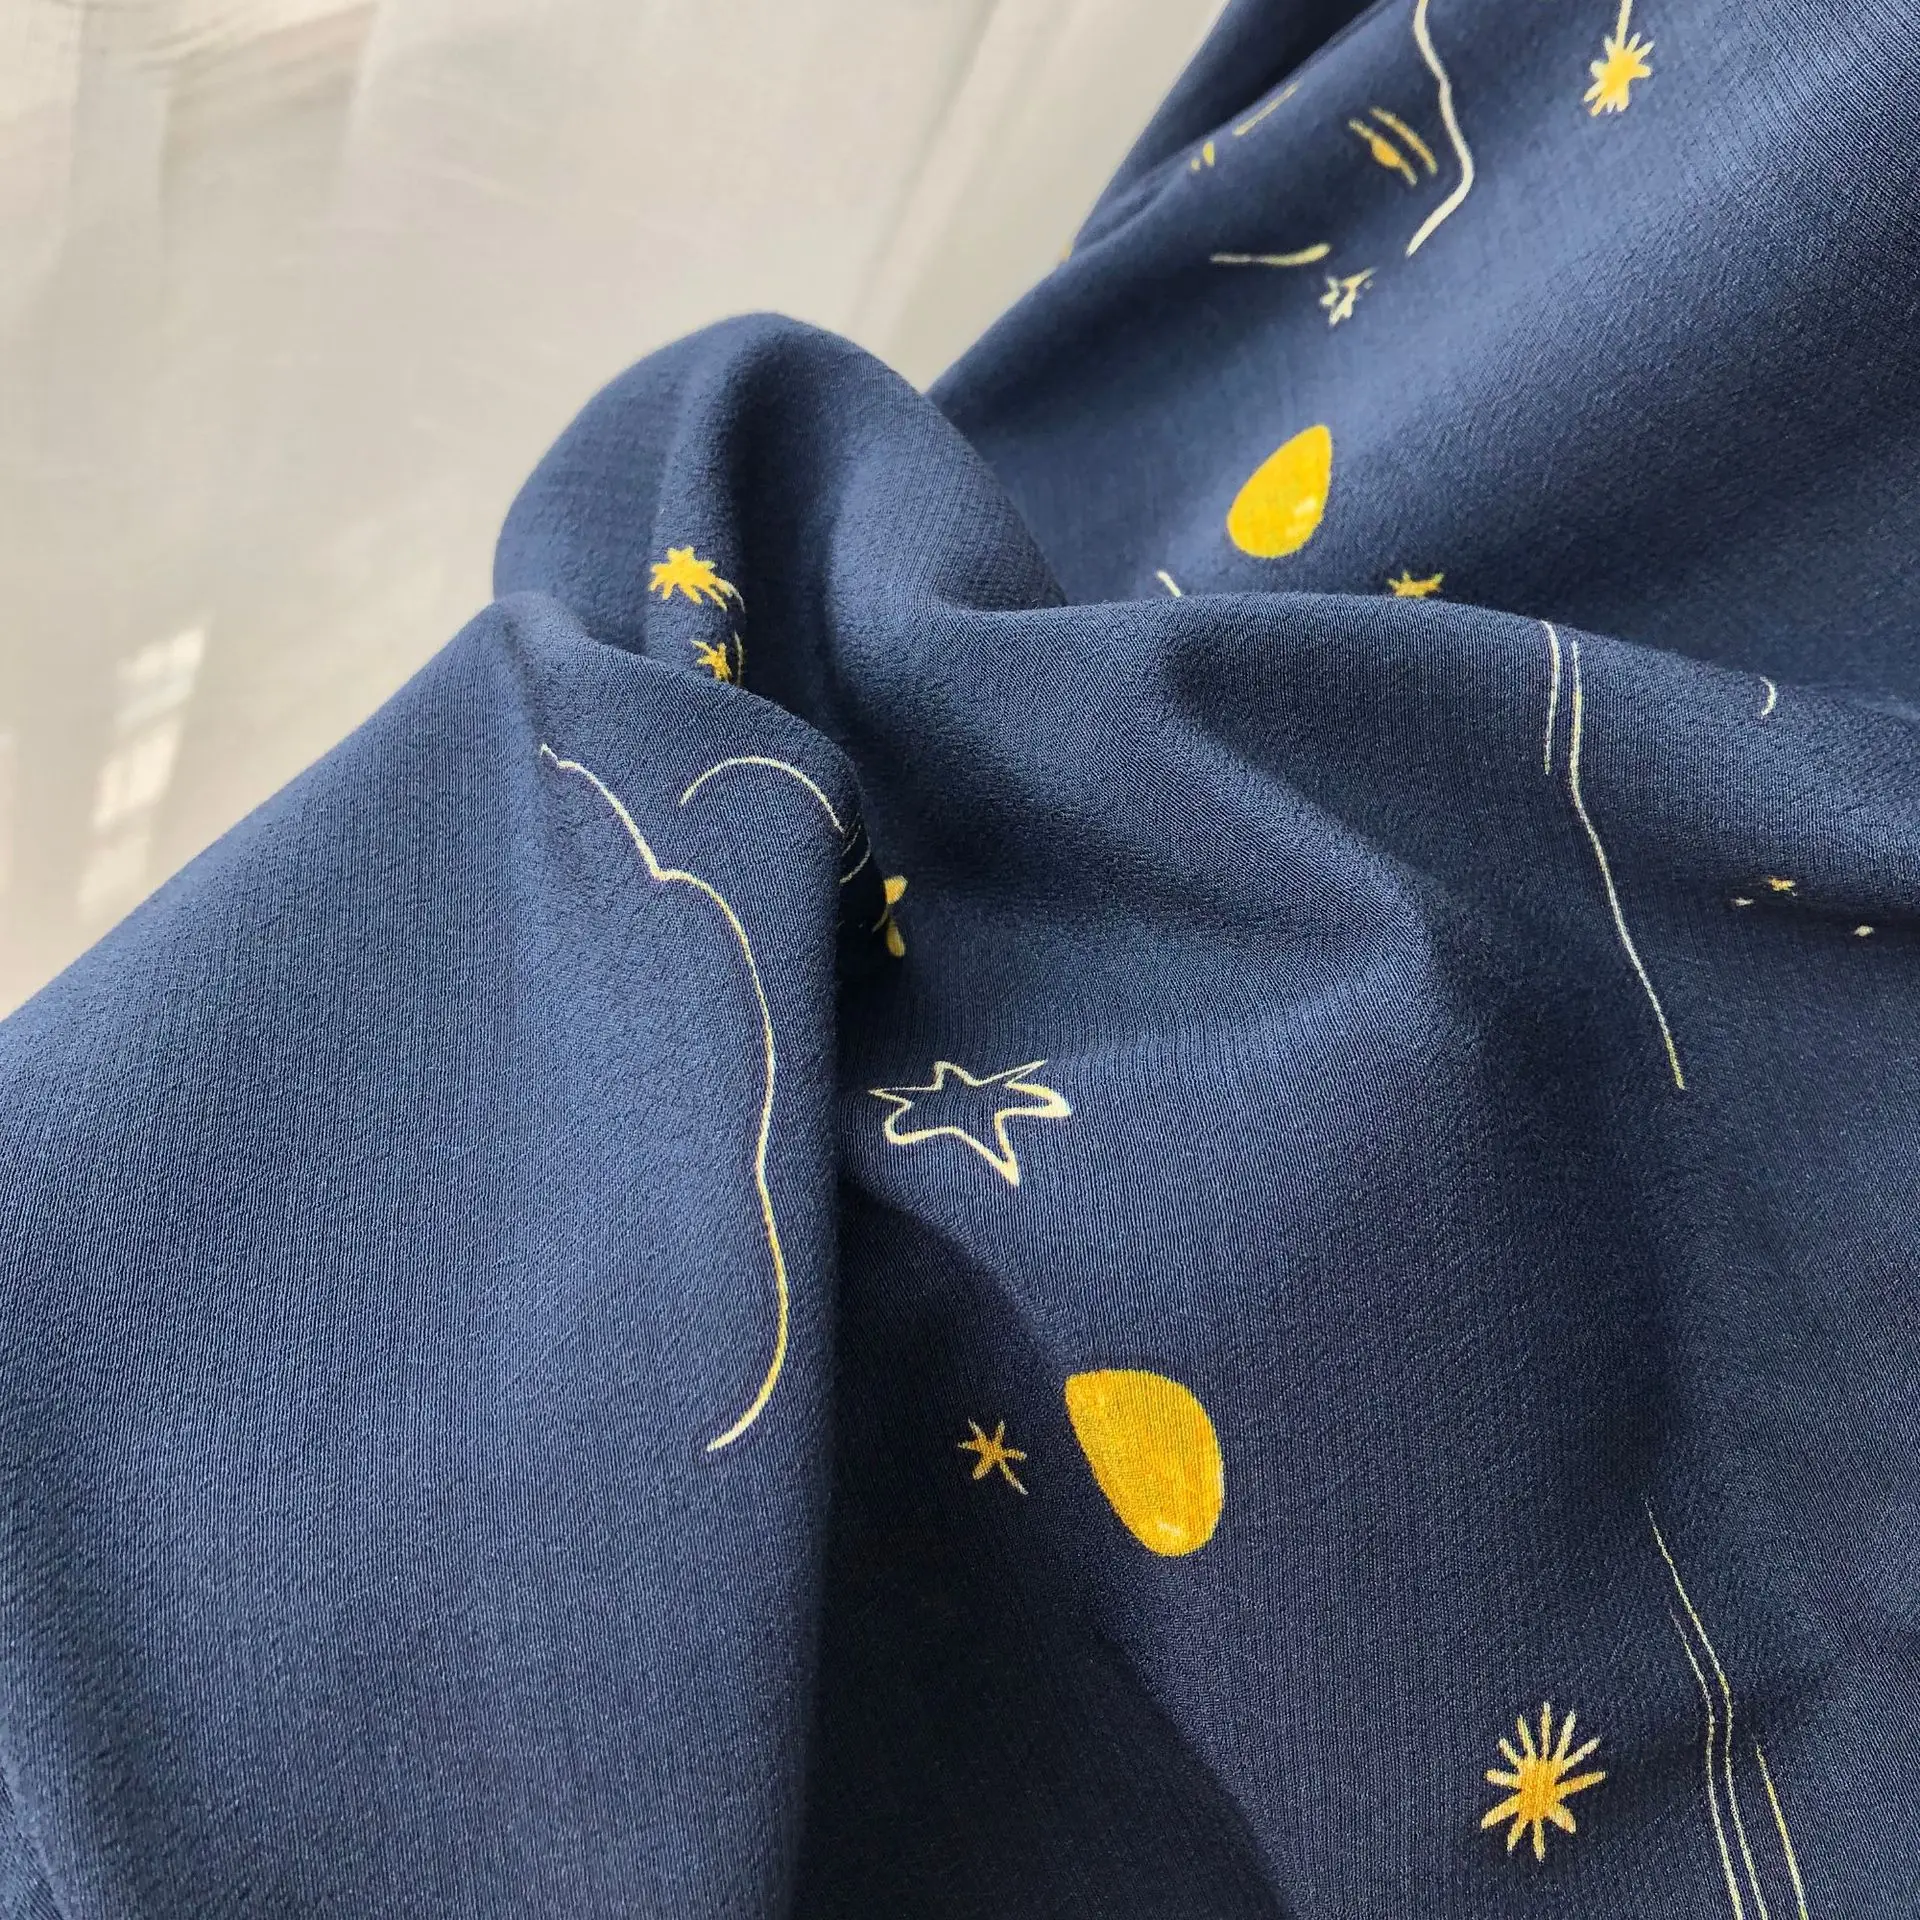 Женская рубашка Звездная Луна рубашка французский стиль Осенняя мода Звездная Луна принт Тонкий костюм рубашка с воротником